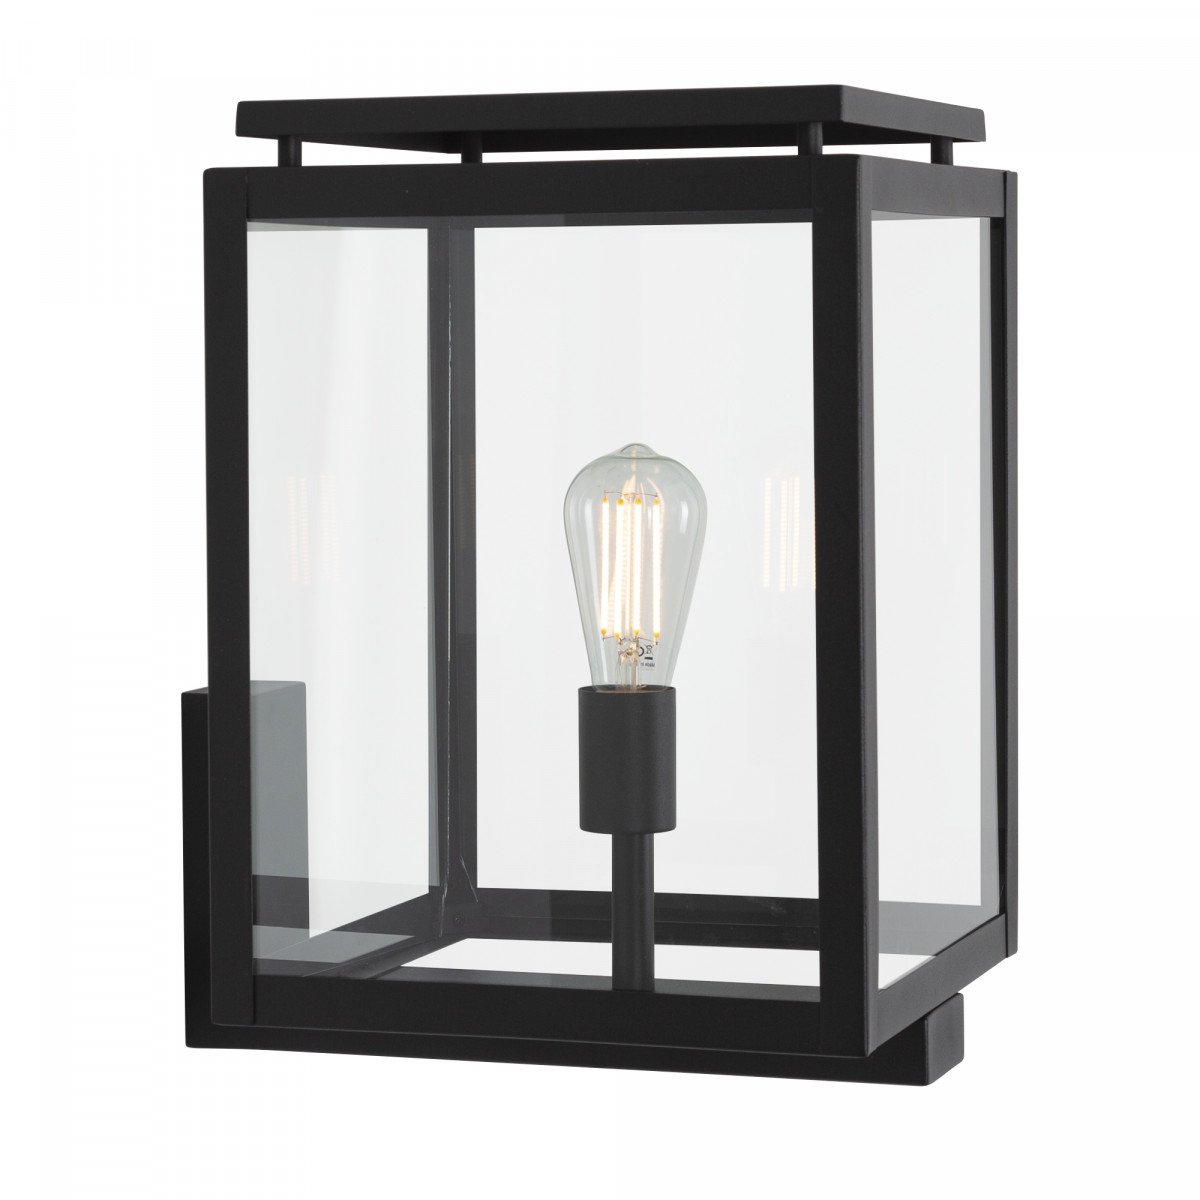 Buitenverlichting, buitenlamp Vecht XL, een origineel stijlvol tijdloos KS buitenlamp, de perfecte gevellamp, zwart strak klassieke gevelverlichting van KS Verlichting